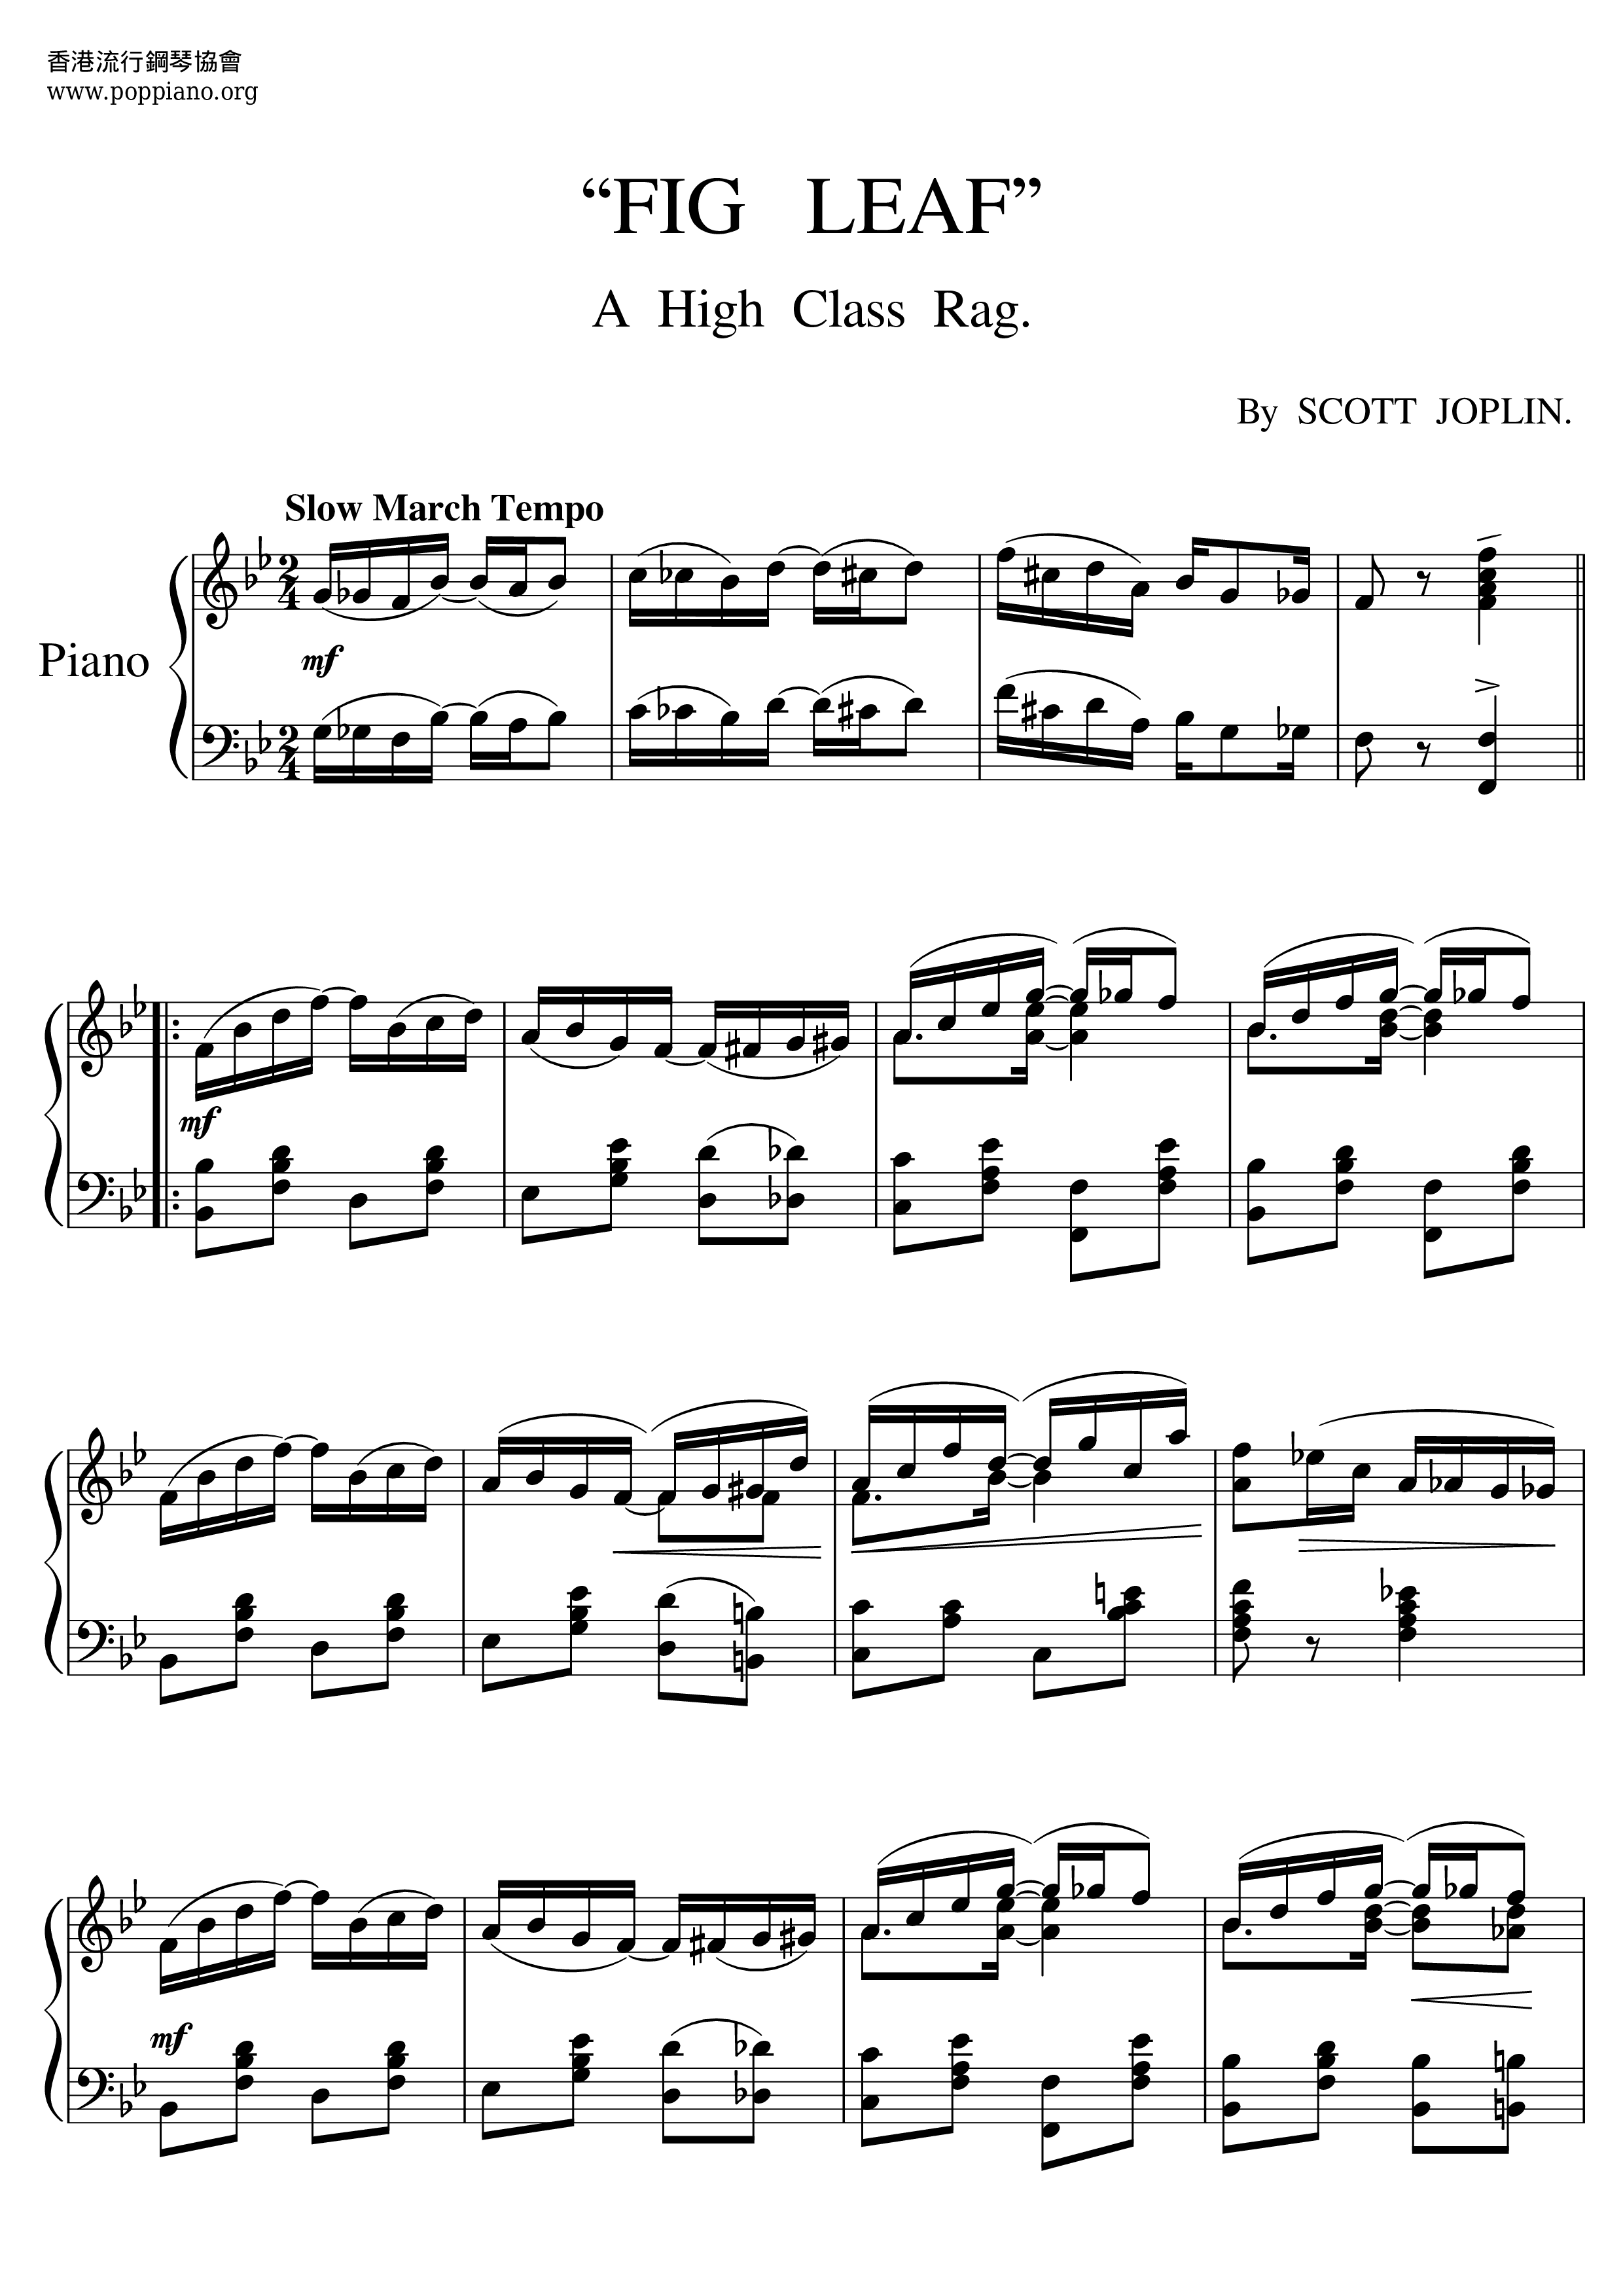 Fig Leaf Ragピアノ譜